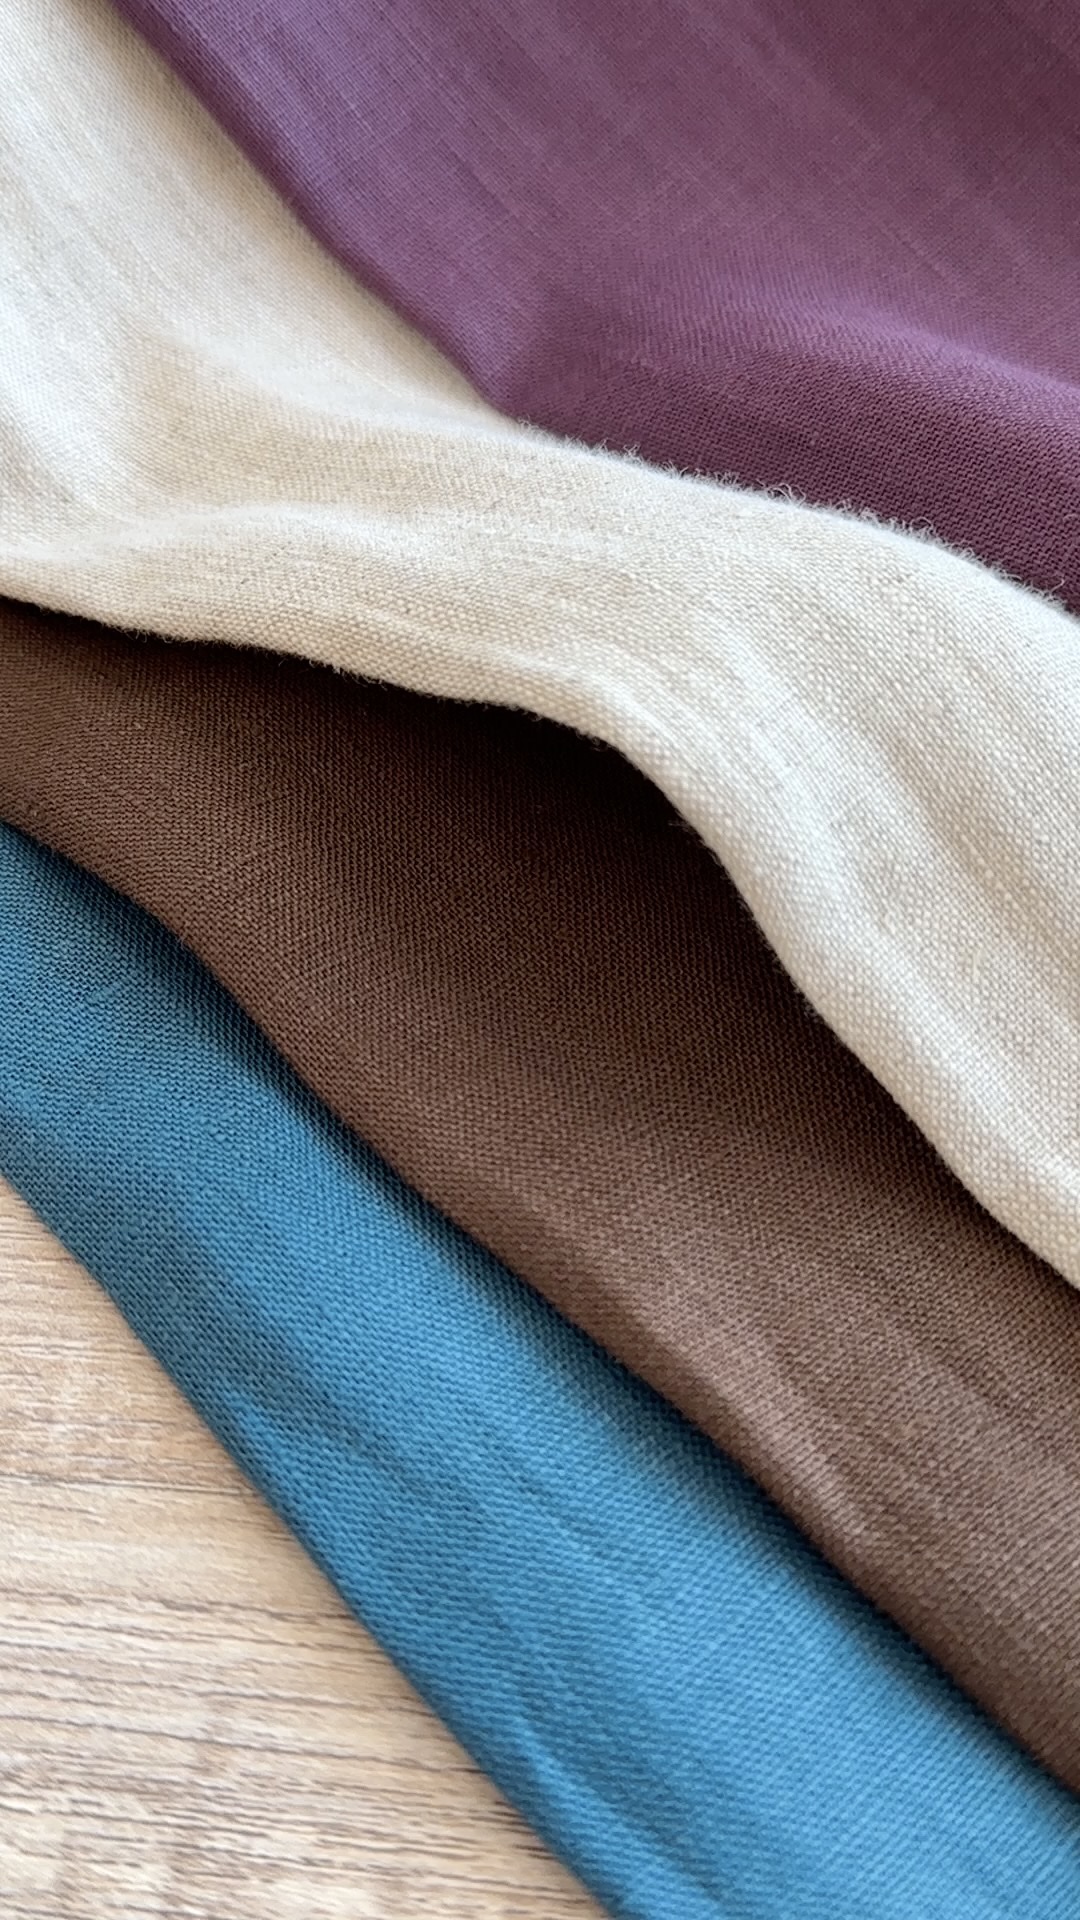 雨露麻比常规处理都是要贵一丢丢的⚠️雨露麻常用色织方法织造，不经过麻的氯漂工艺，来展现一种原生态的风格。